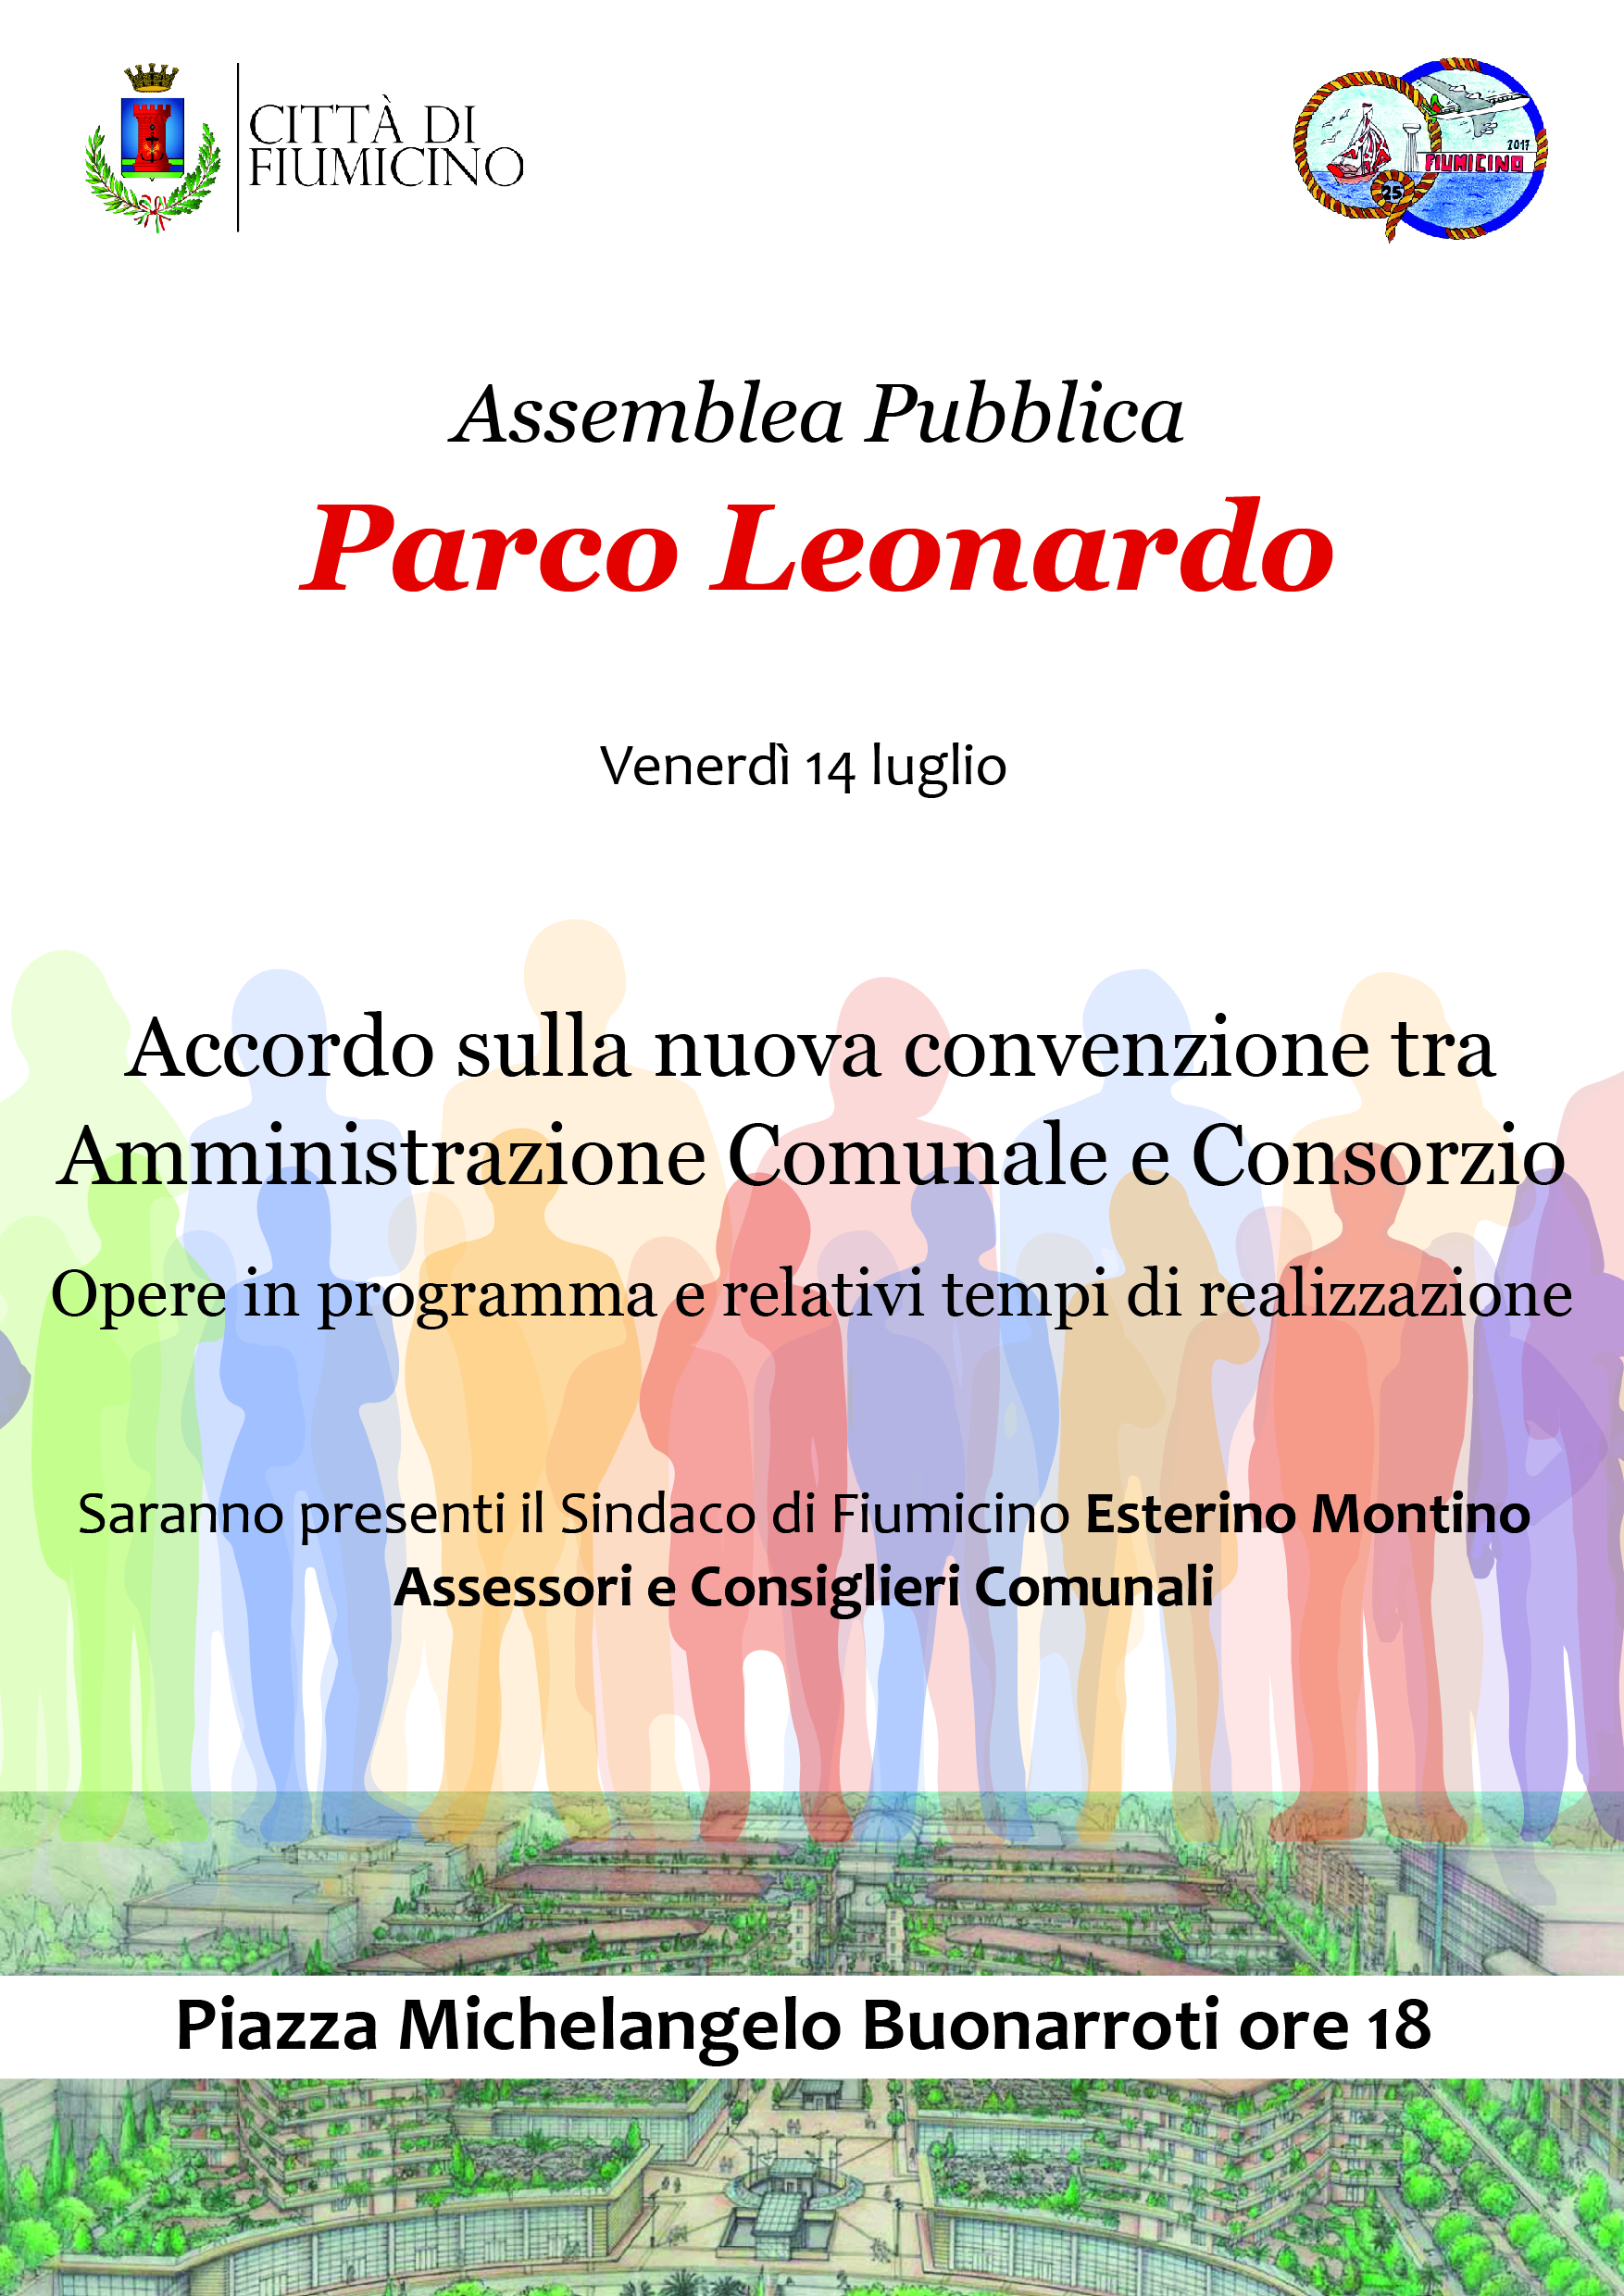 Fiumicino, Parco Leonardo: venerdì 14 luglio assemblea pubblica in merito all'accordo su nuova convenzione tra amministrazione e consorzio